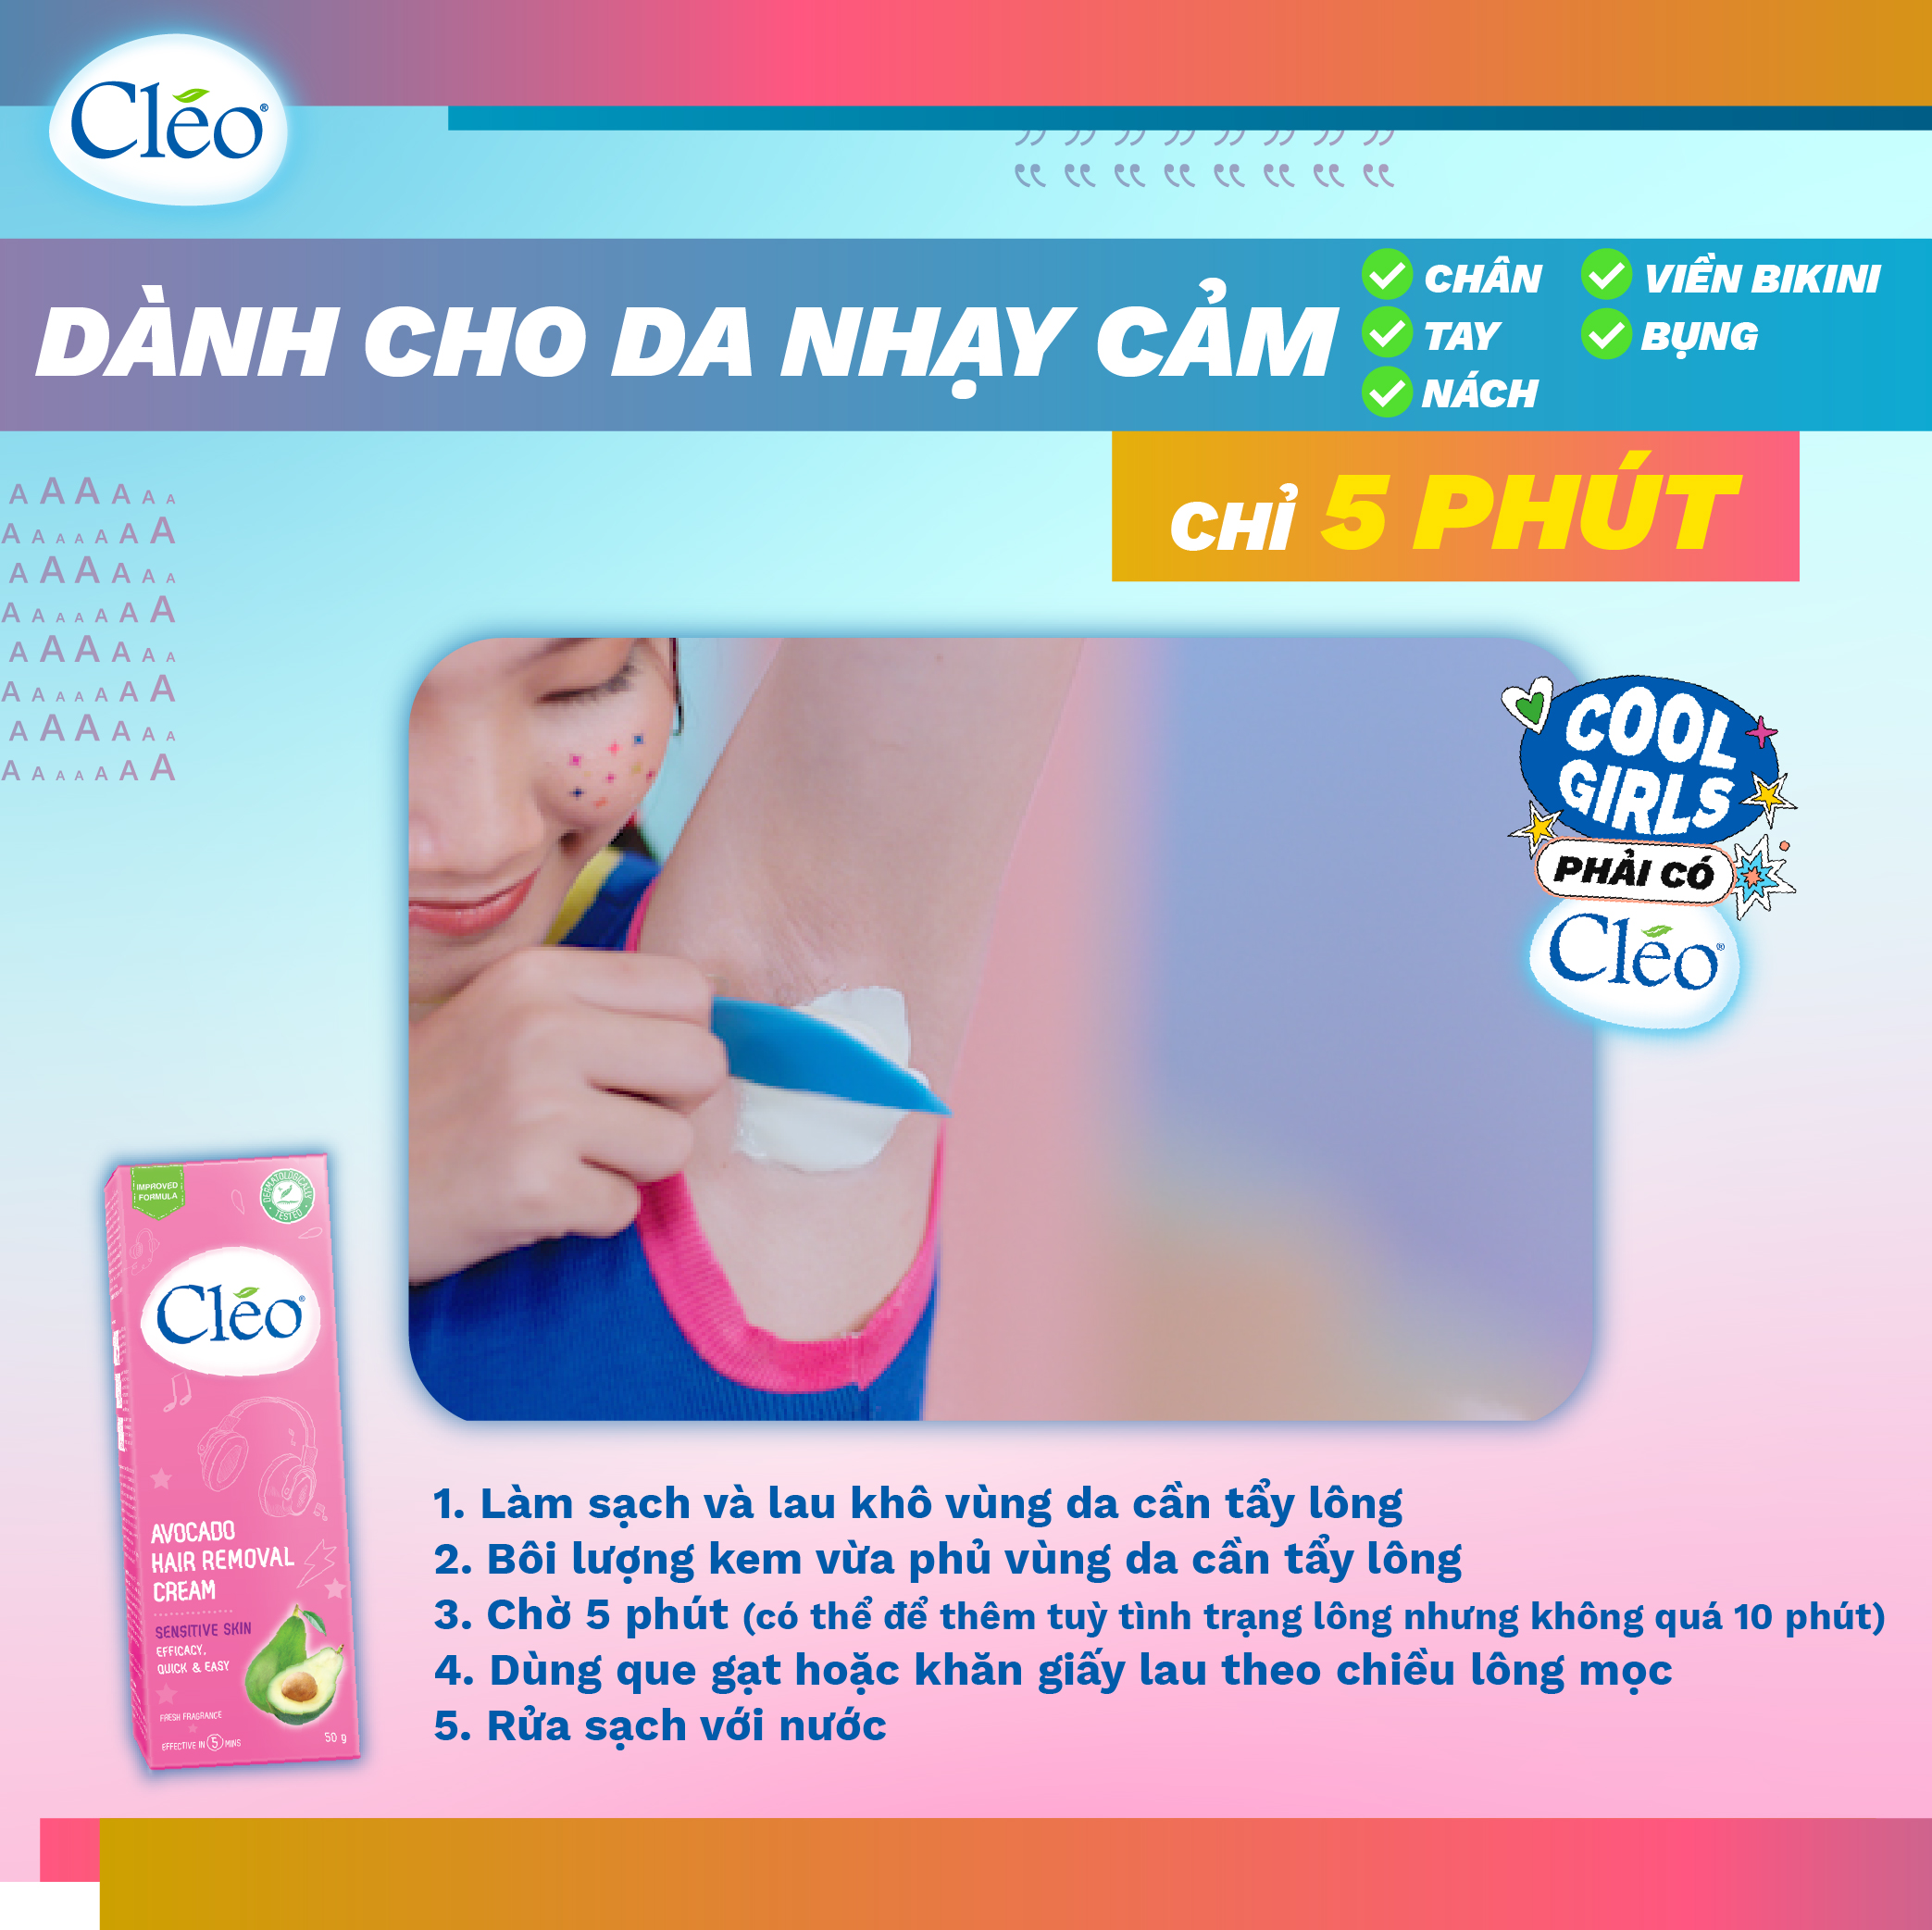 Kem Tẩy Lông Cleo Dành Cho Da Nhạy Cảm, An Toàn, Hiệu Quả, Không Đau Rát 50g